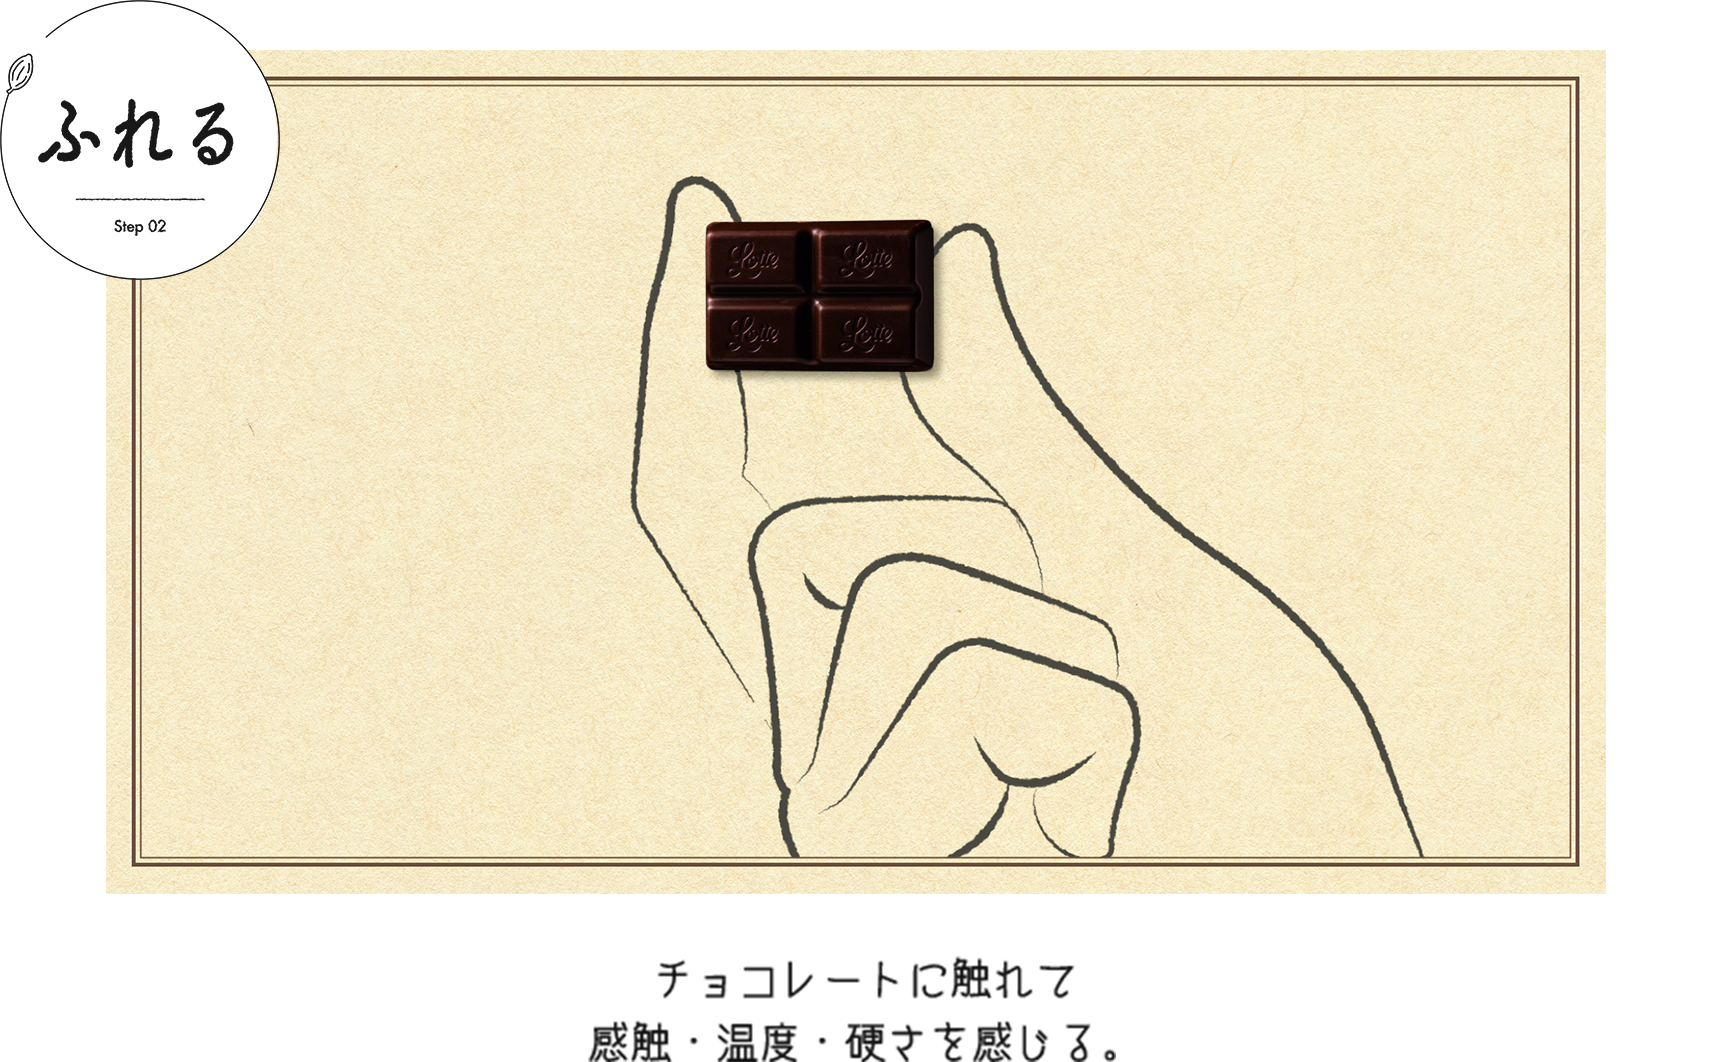 ふれる チョコレートに触れて感触・温度・硬さを感じる。